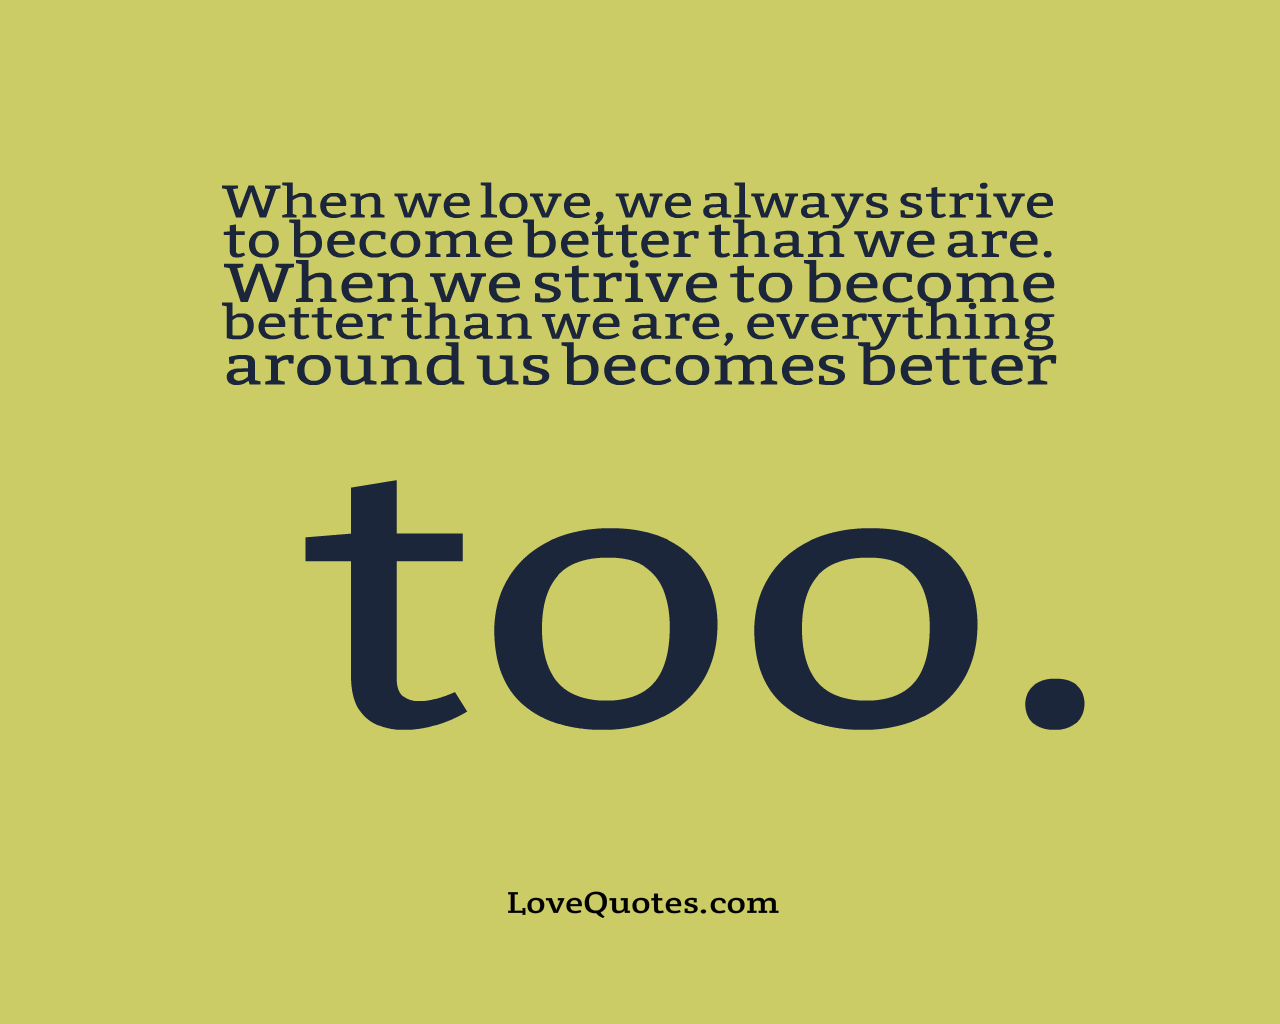 When We Love